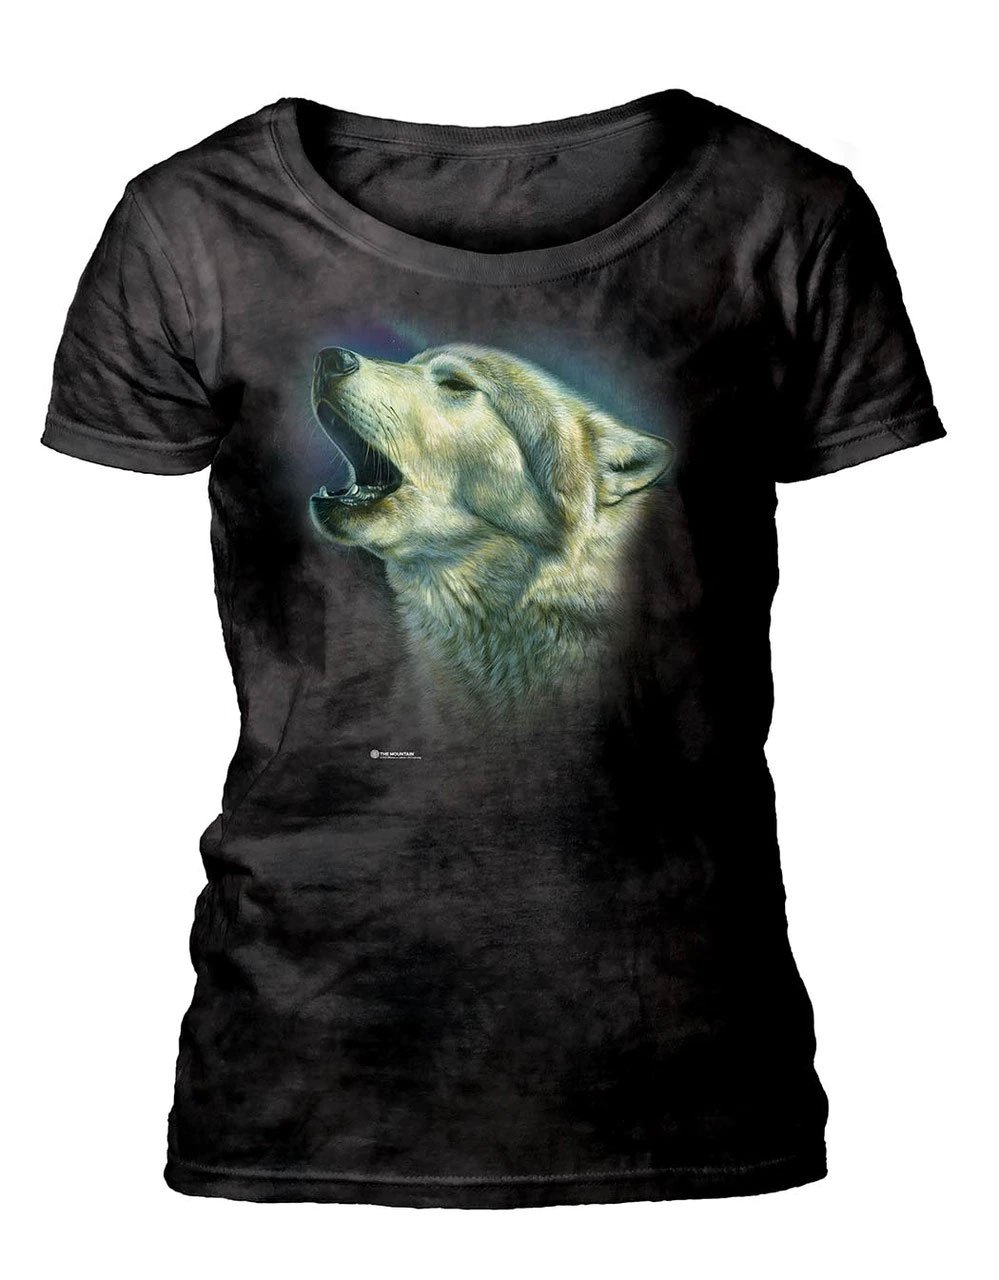 Howling Wolf Women's Scoop T-shirt